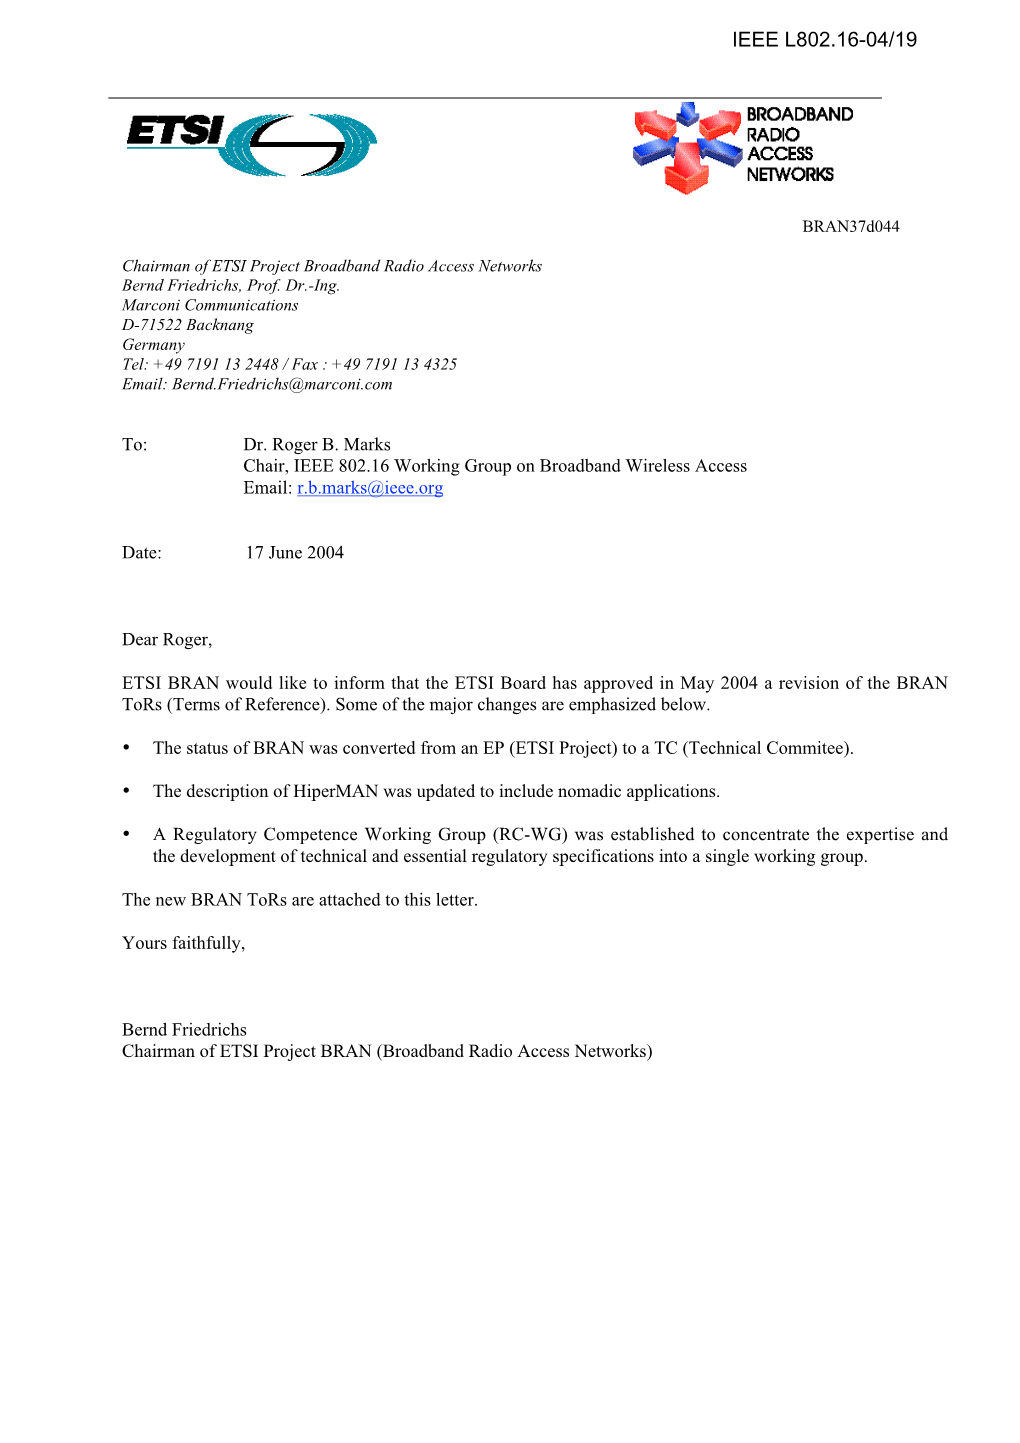 Liaison Letter from ETSI BRAN of 17 June 2004